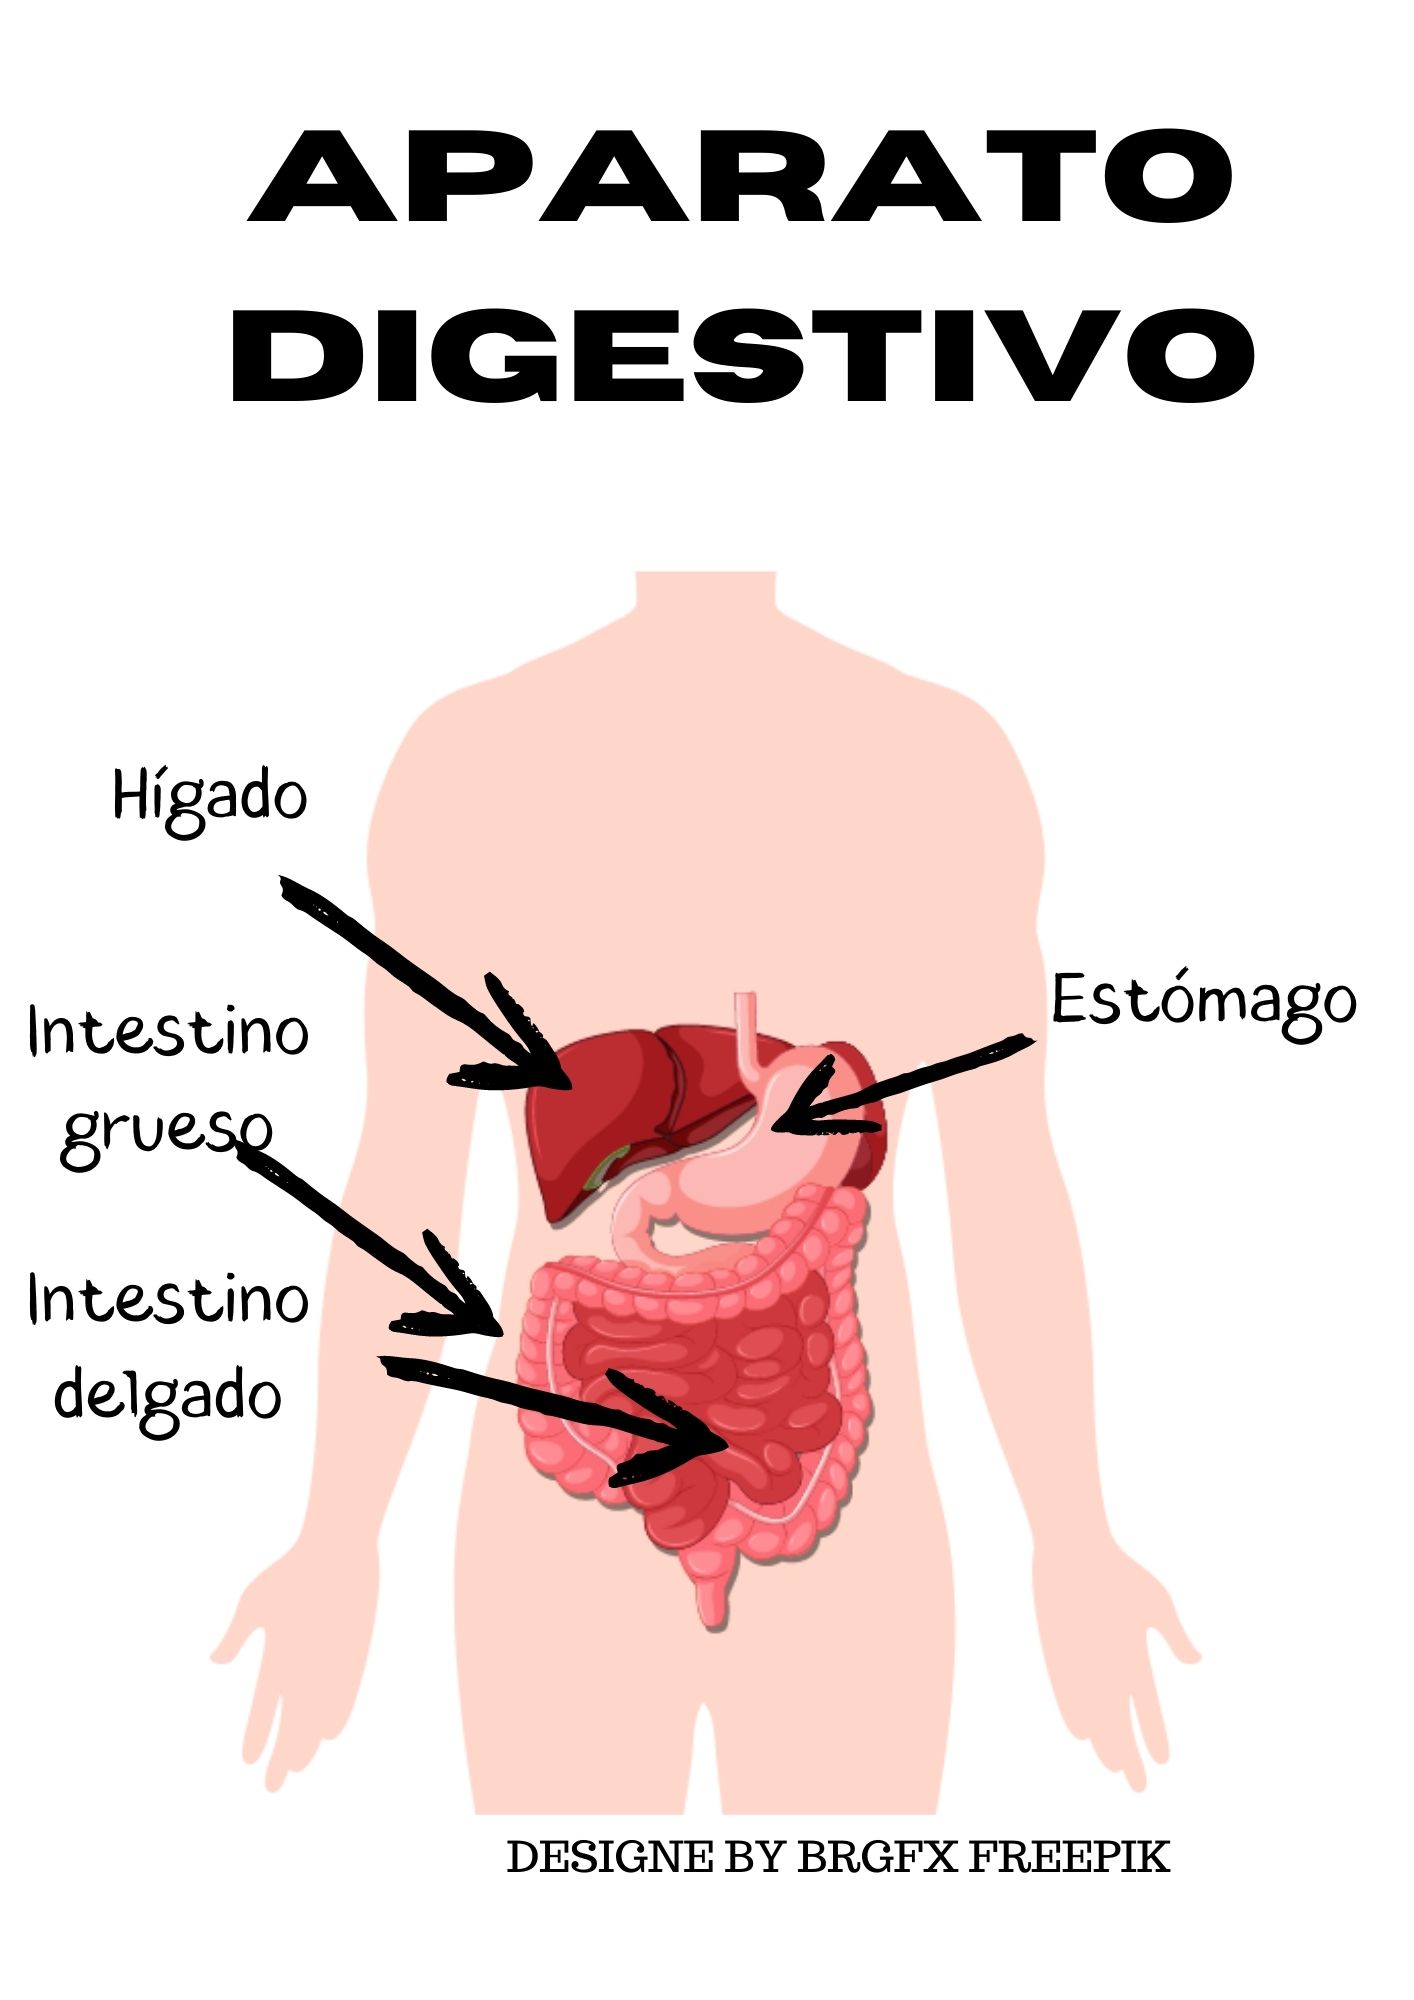 Imagen con algunas partes del aparato digestivo